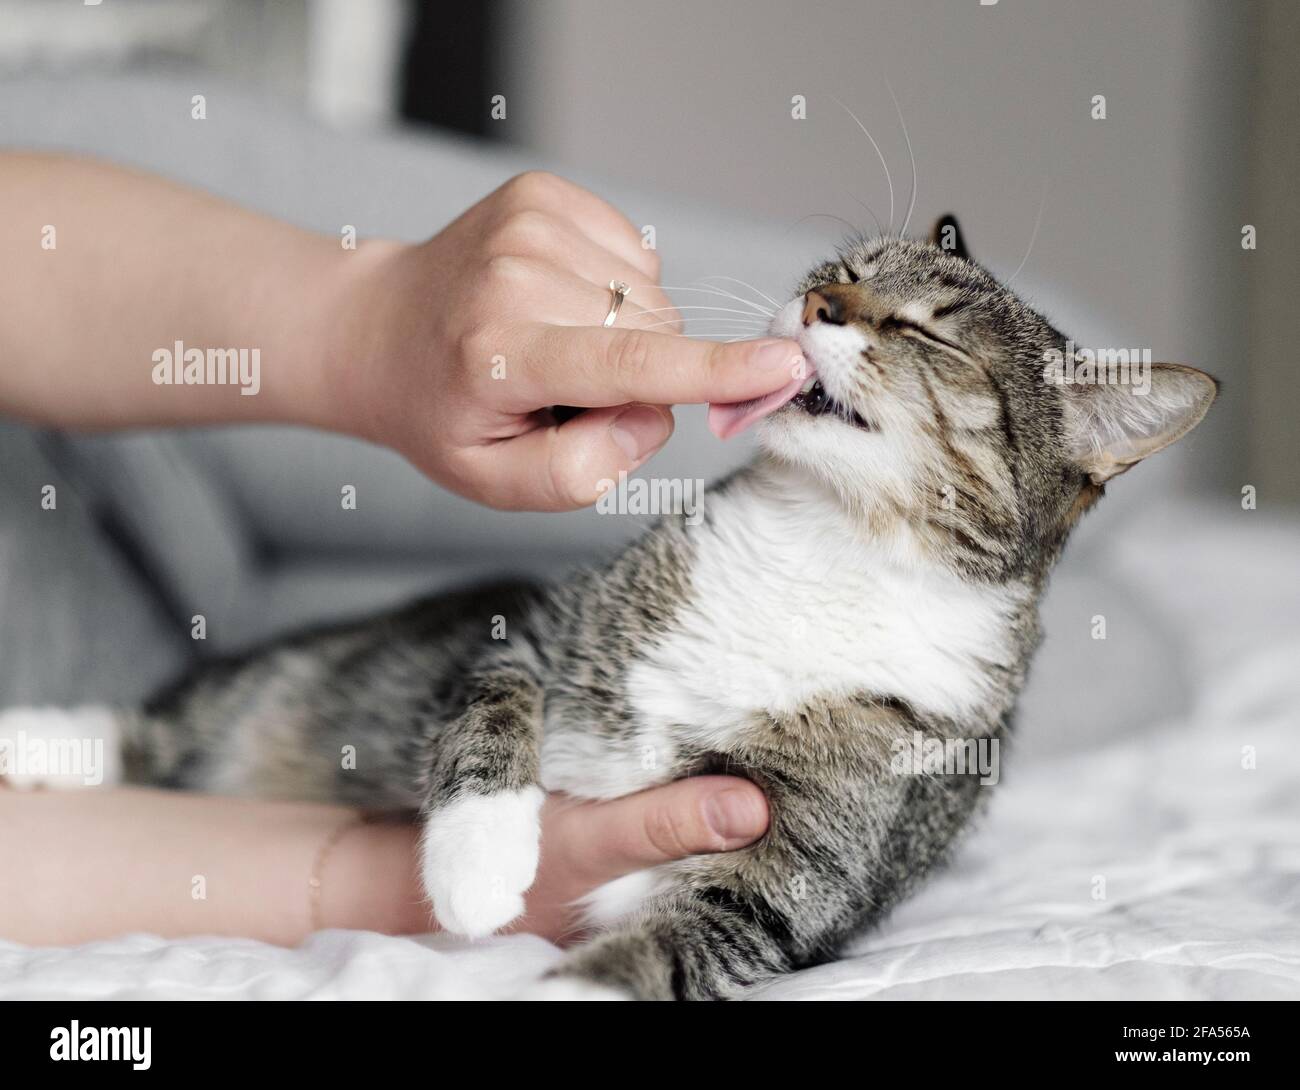 Glückliche Katze, der Besitzer streichelte die Katze, die Katze leckt den  Finger des Besitzers Stockfotografie - Alamy